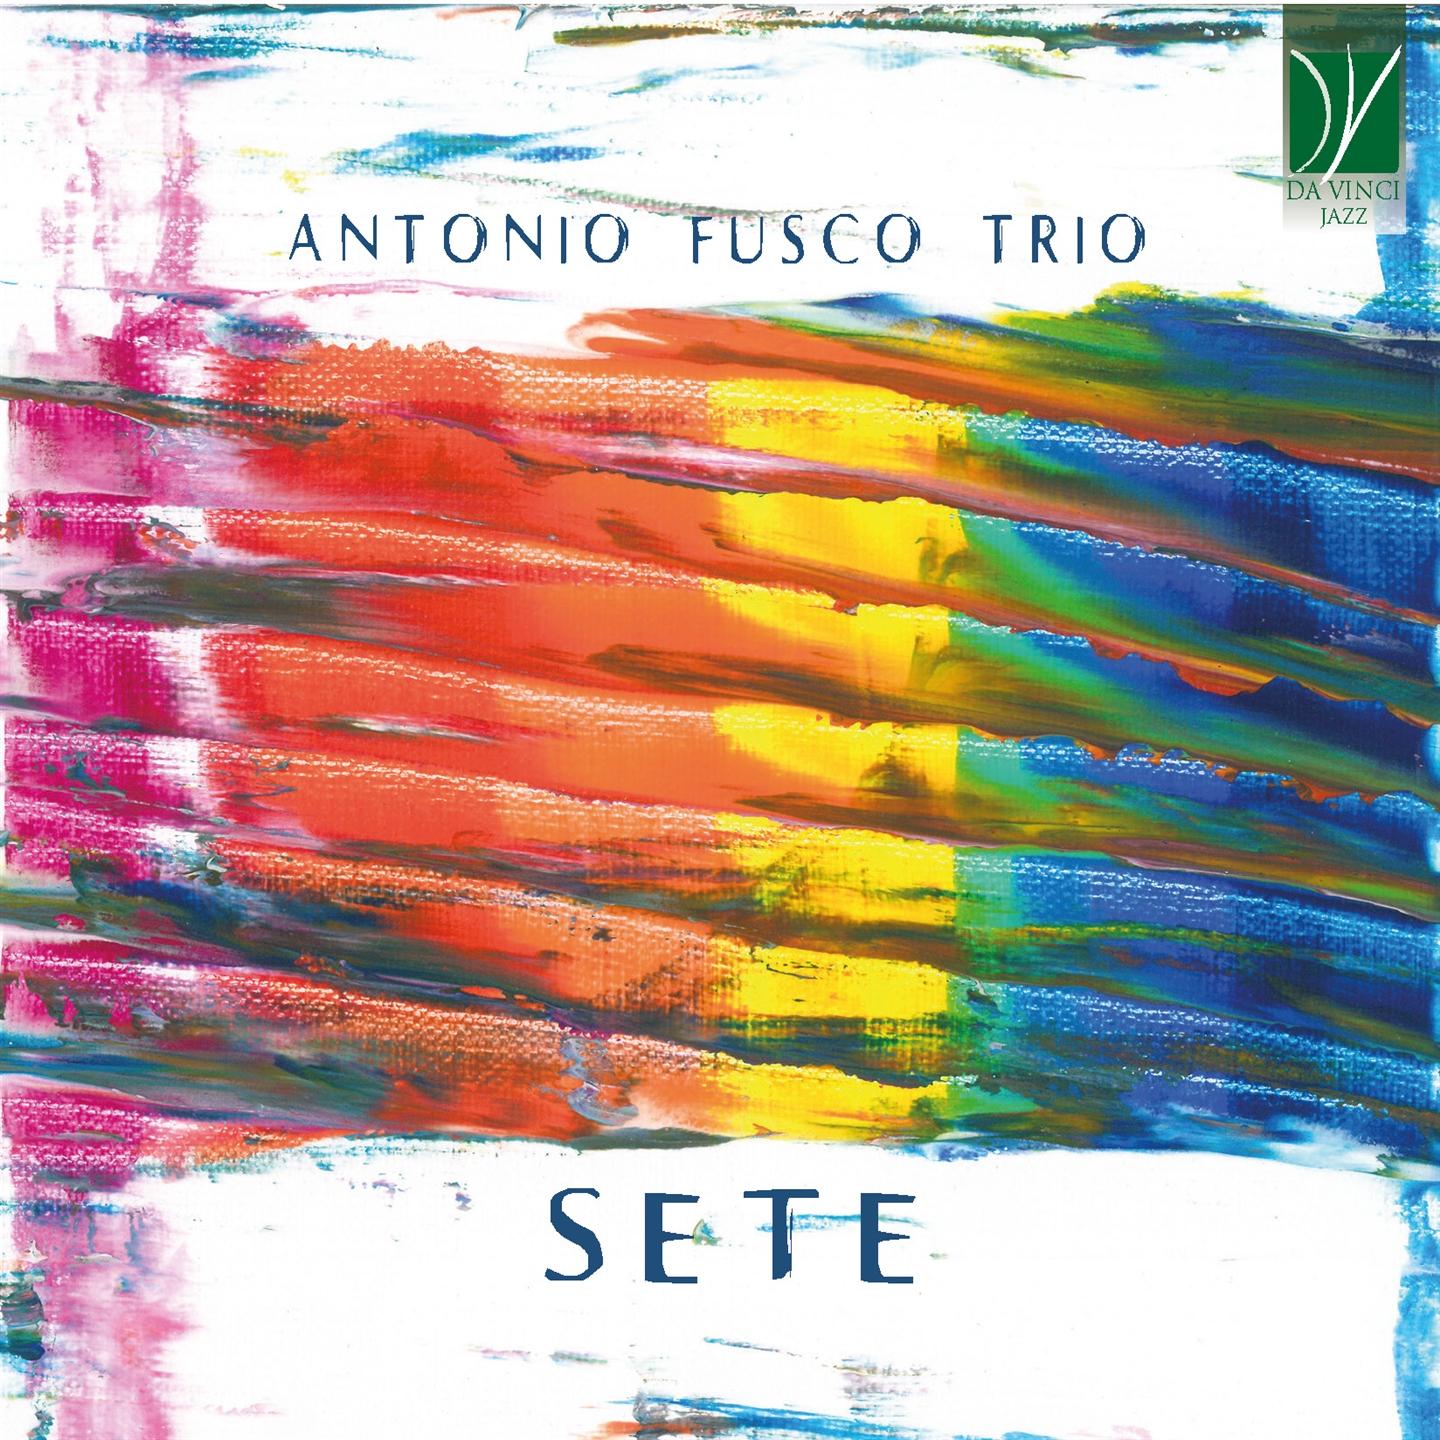 Antonio Fusco - Sete - Foto 1 di 1